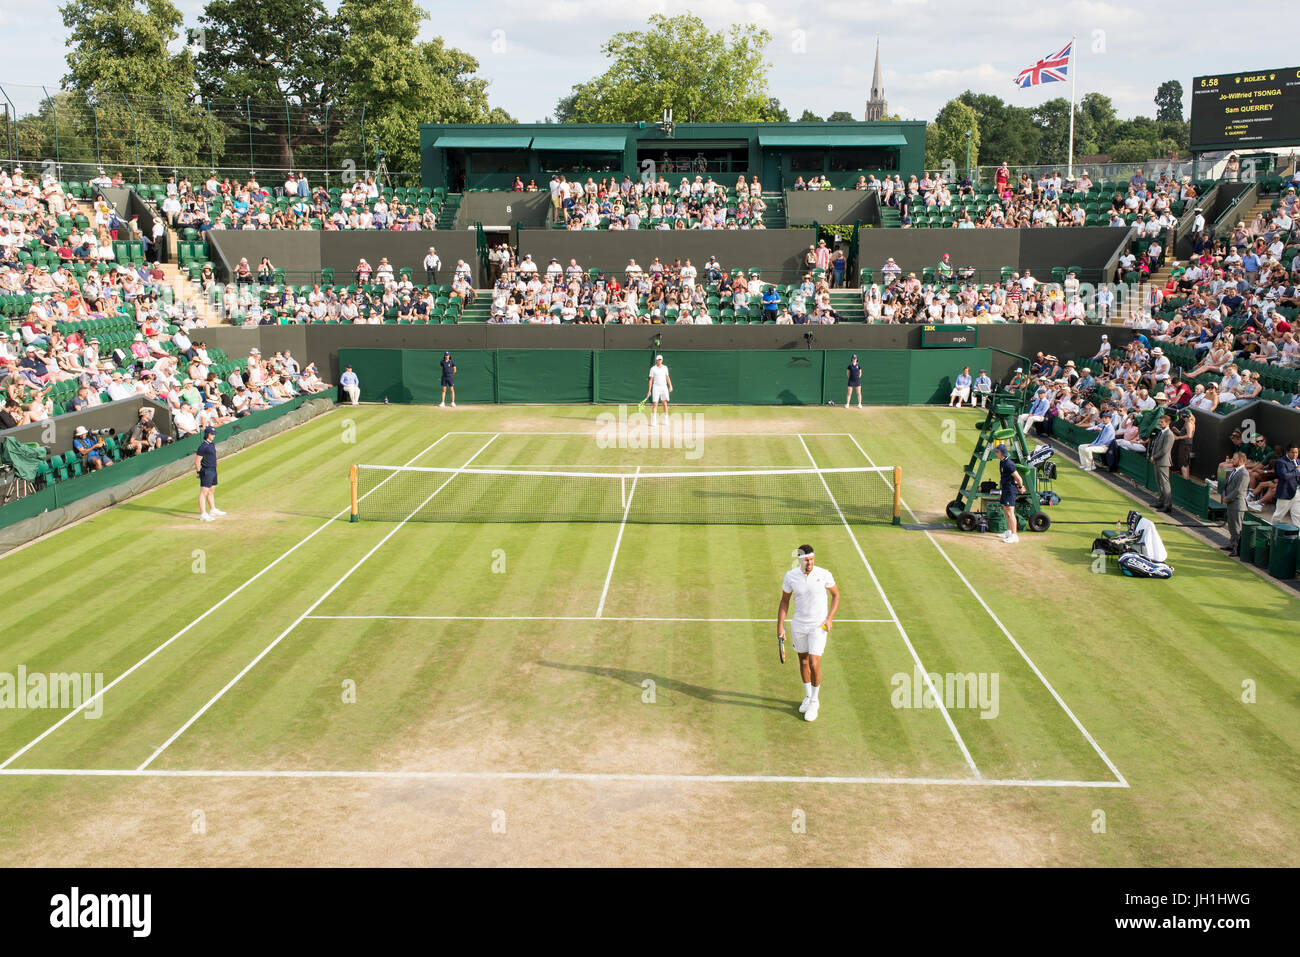 Londres, UK - Juillet 2017 : le tribunal No 2. au cours des championnats de Wimbledon, plein de spectateurs regardant le match de tennis en cours Banque D'Images